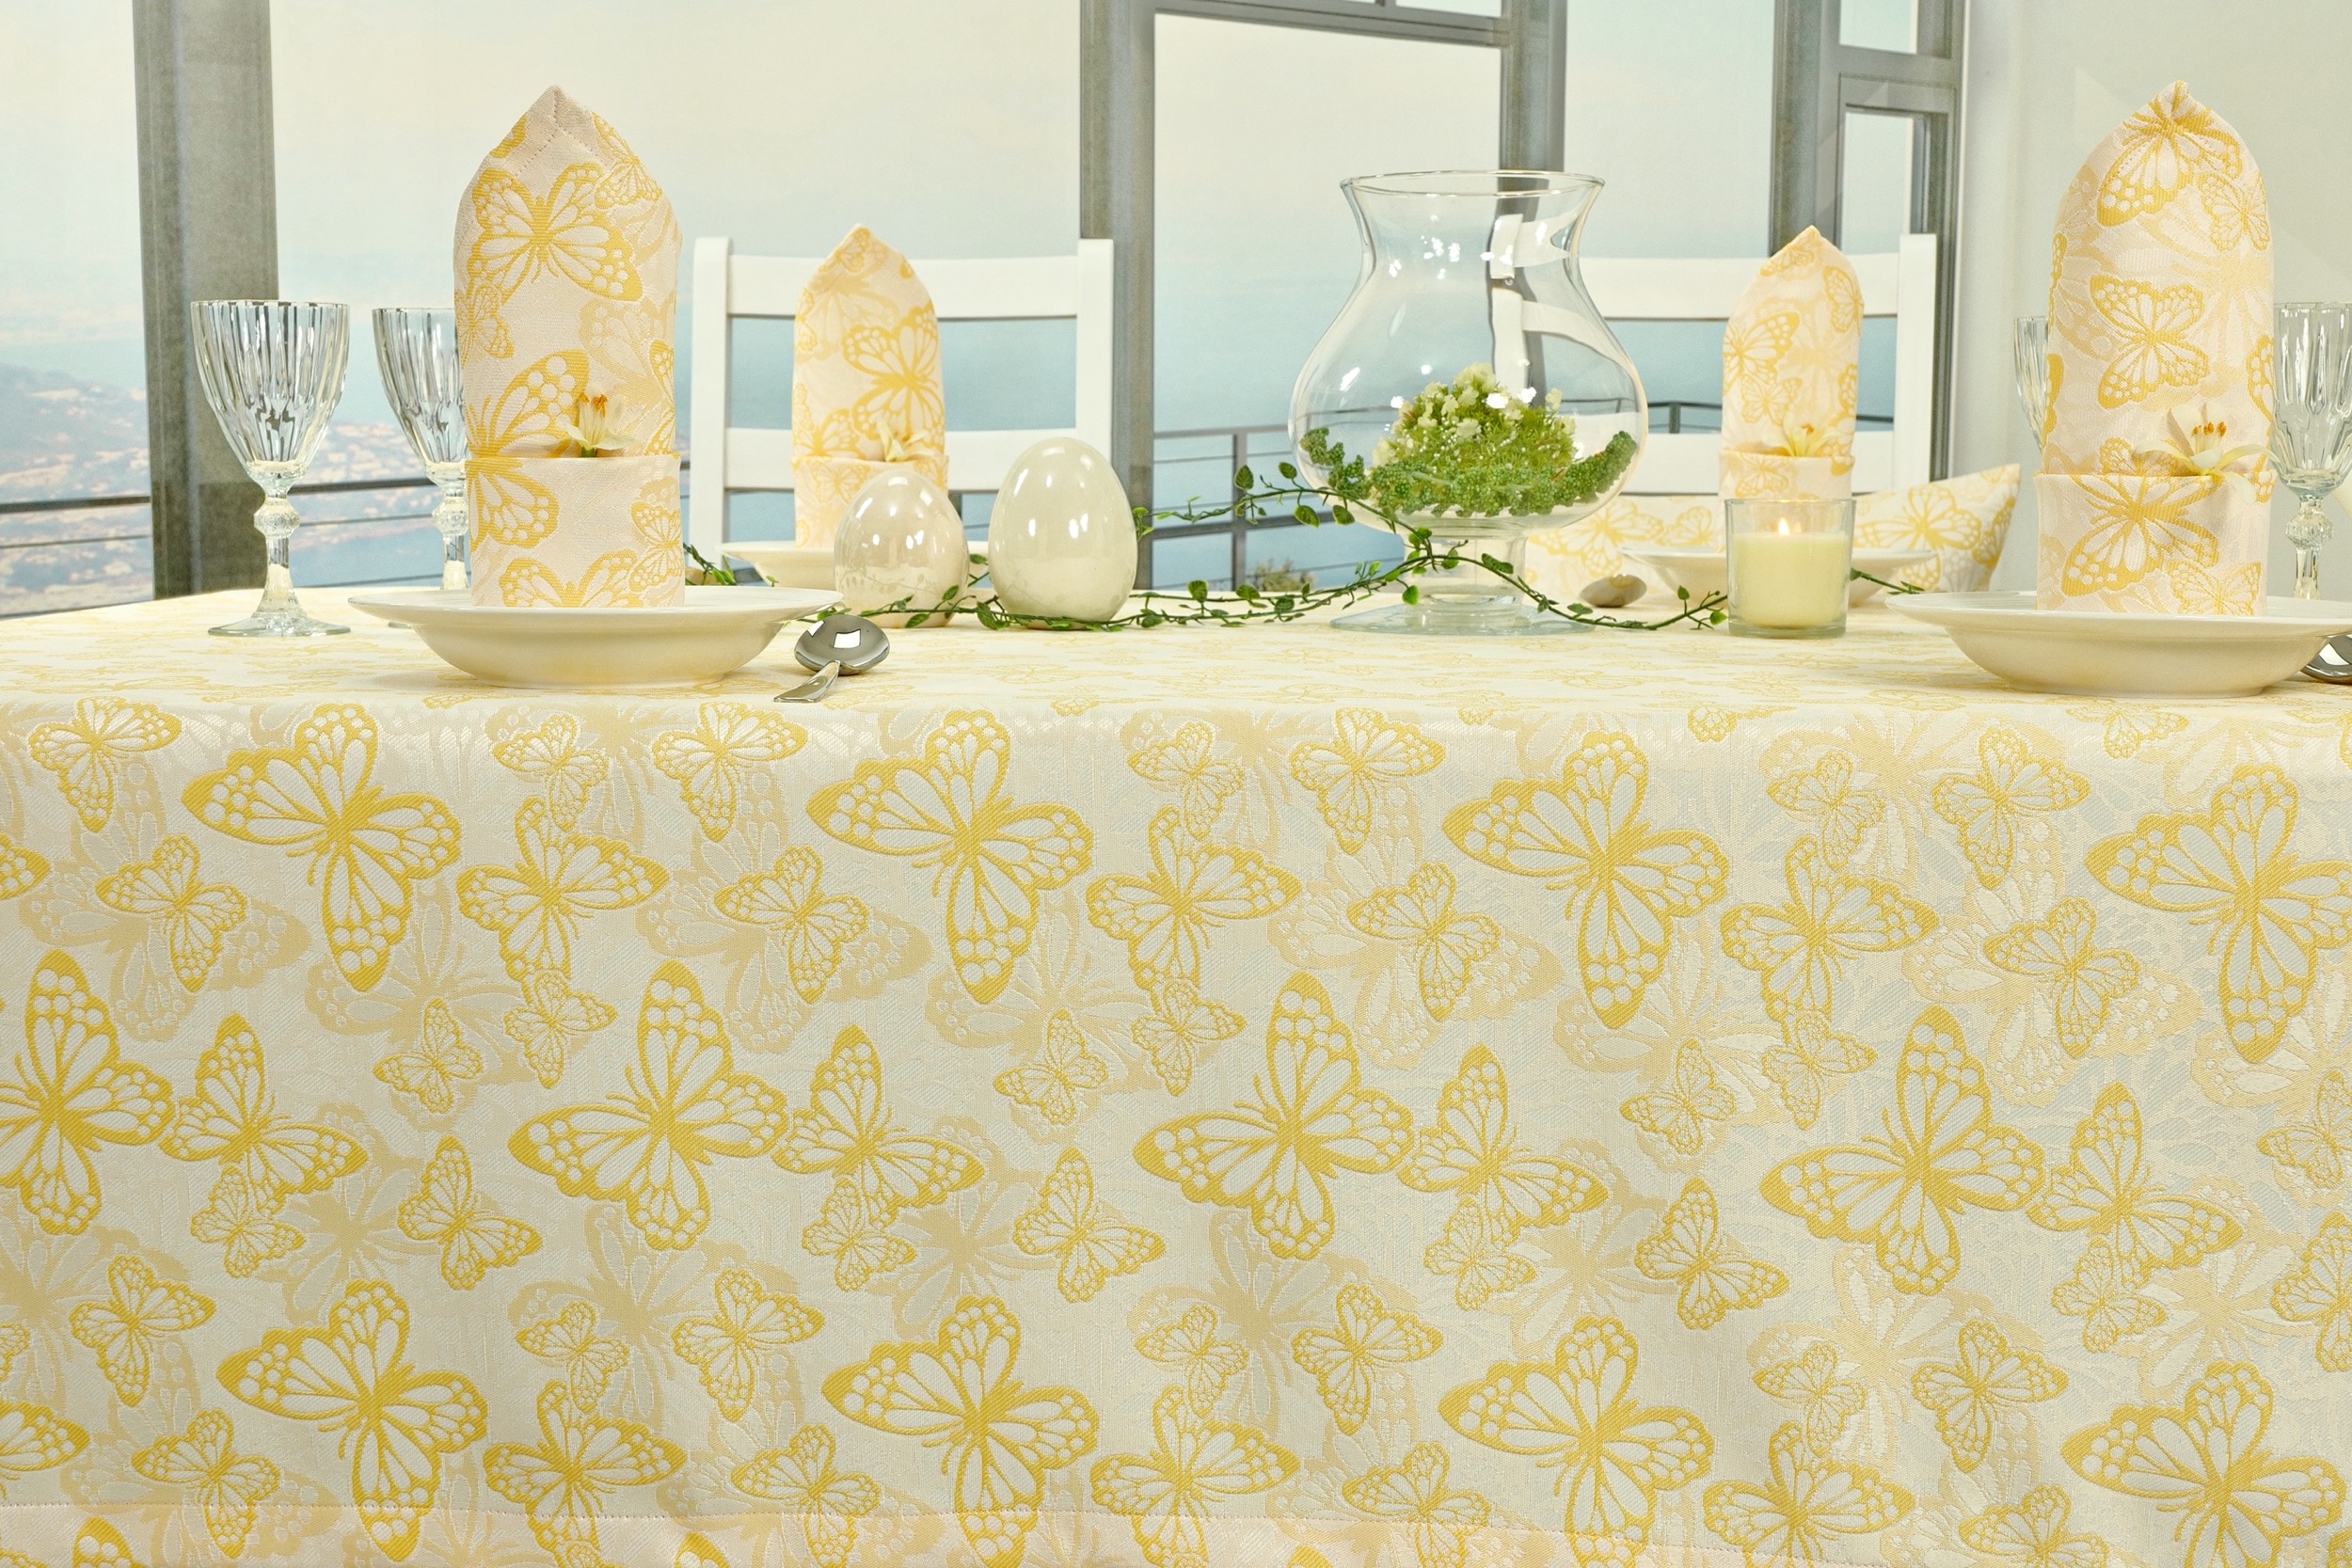 Fleckgeschützte Tischdecke Weiß Gelb Muster Springtime Breite 100 cm